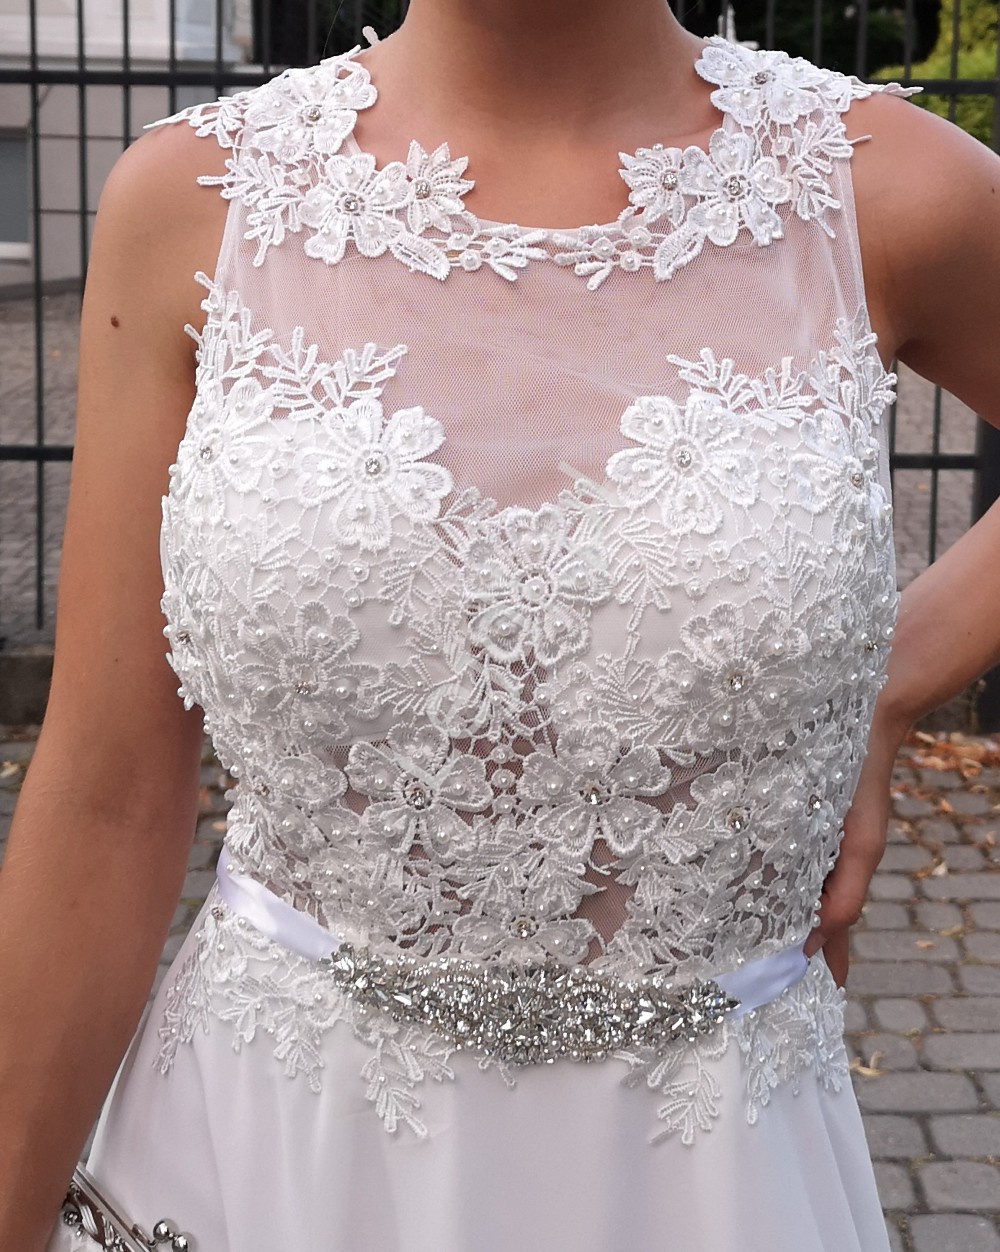 Biała suknia ślubna zdobiona kwiatami koronkowymi i perełkami 